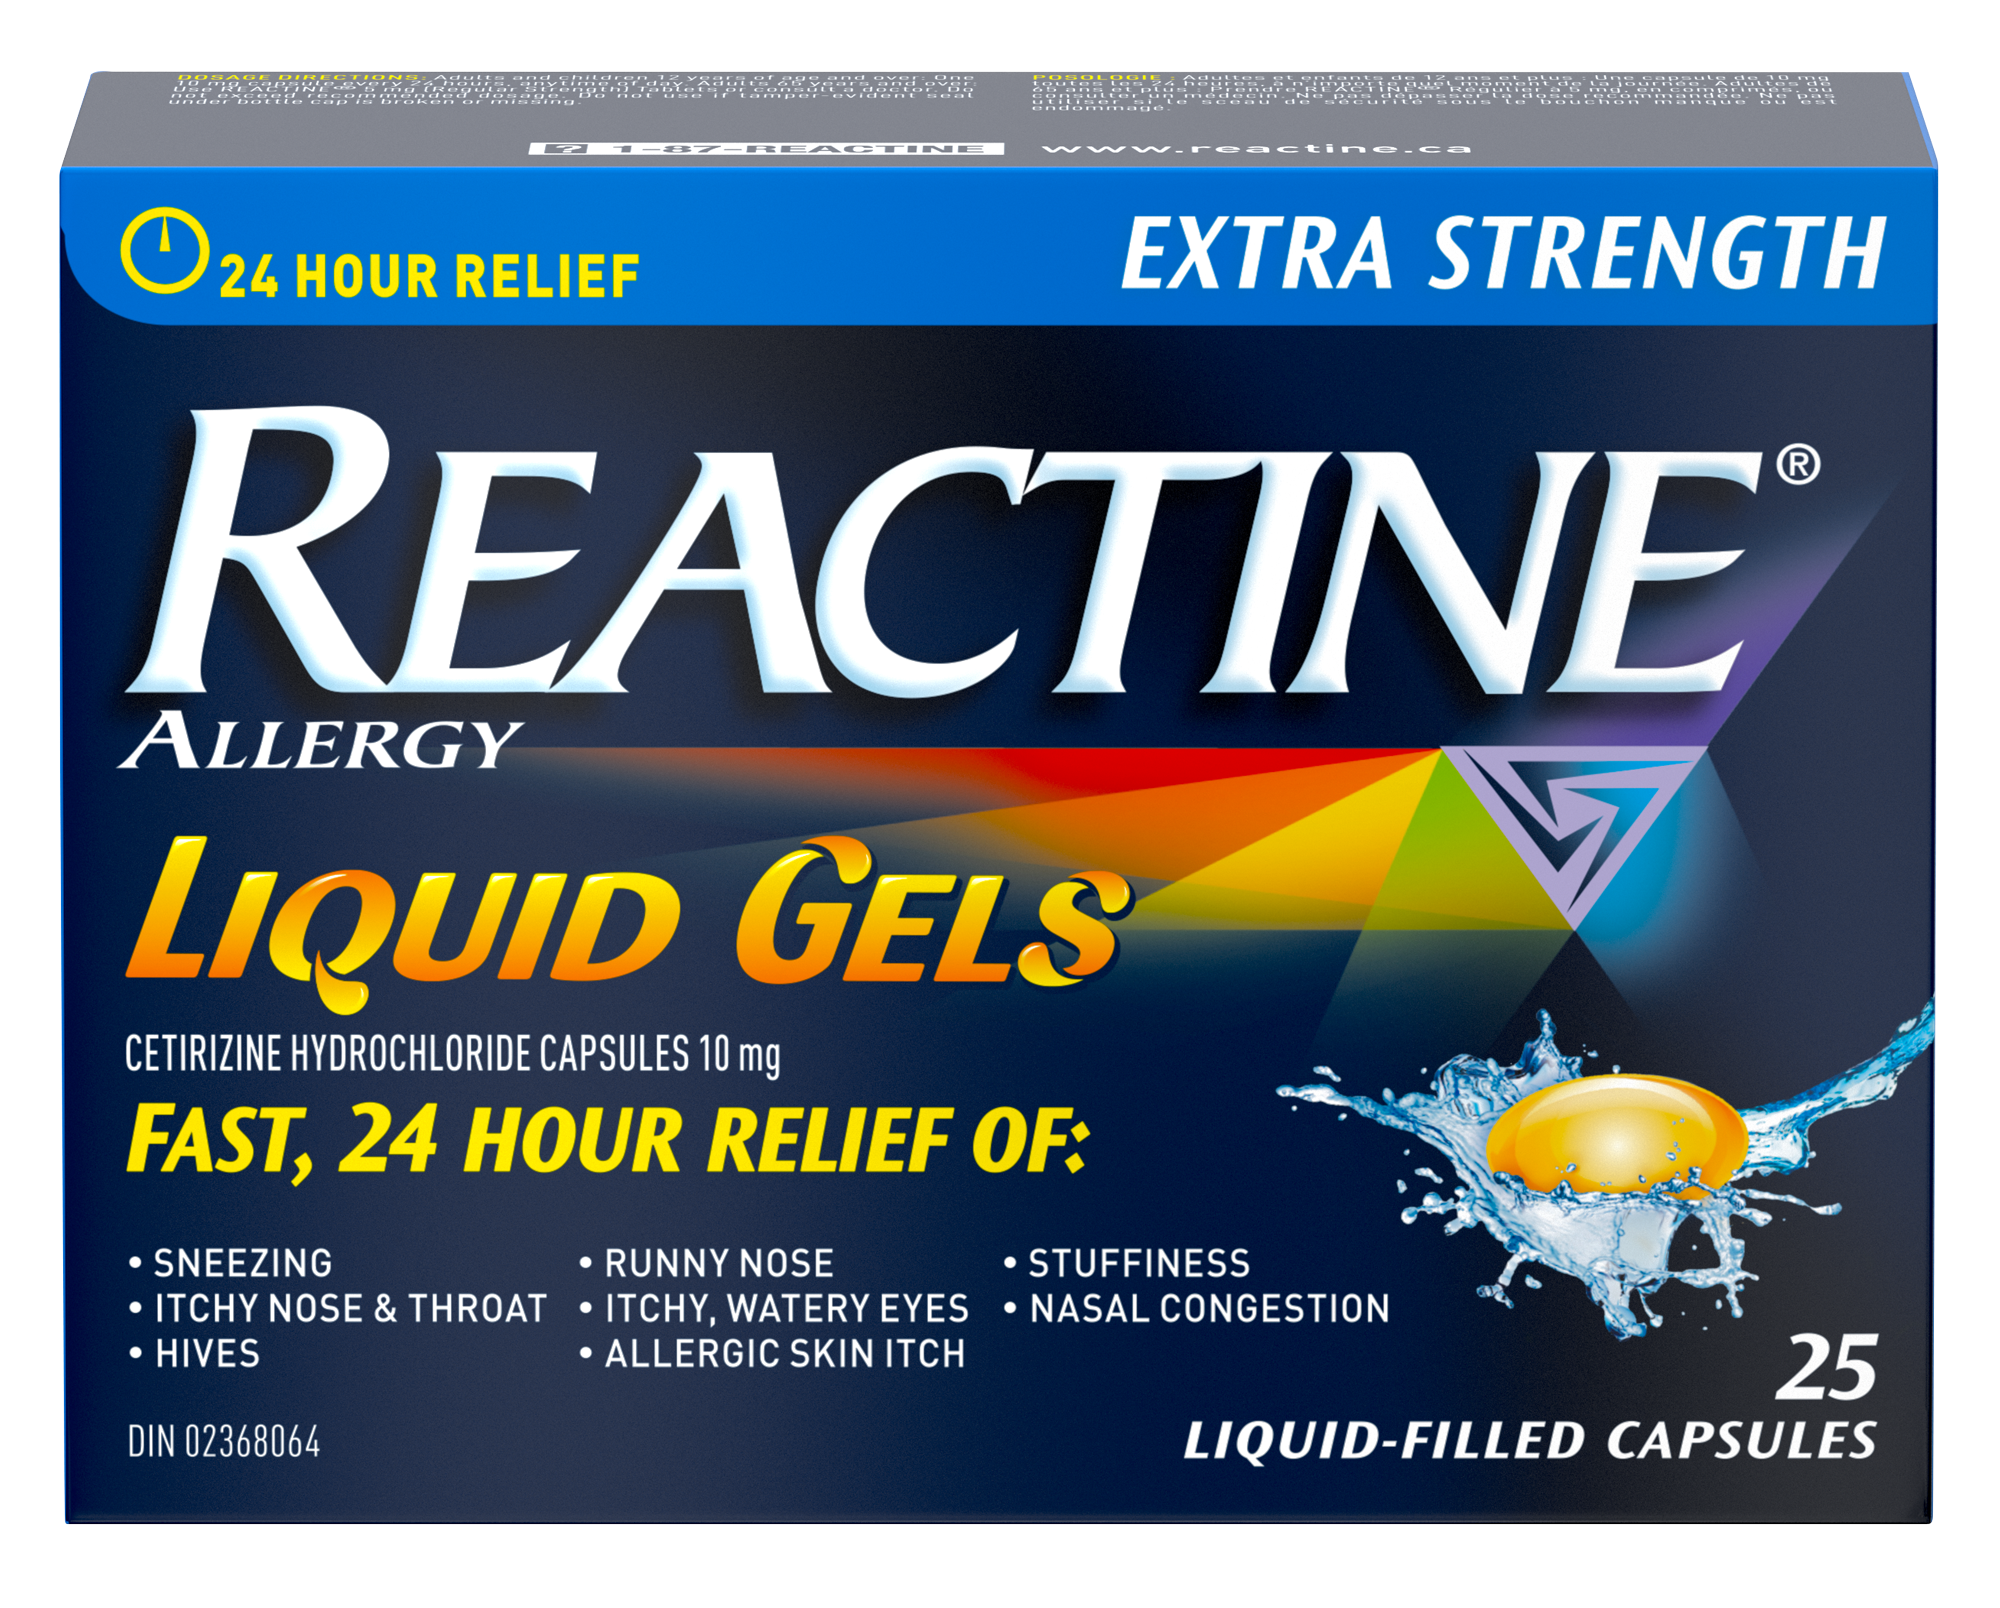 一盒Reactine特强型抗组胺片（10毫克），盐酸西替利嗪，过敏药，25片装。